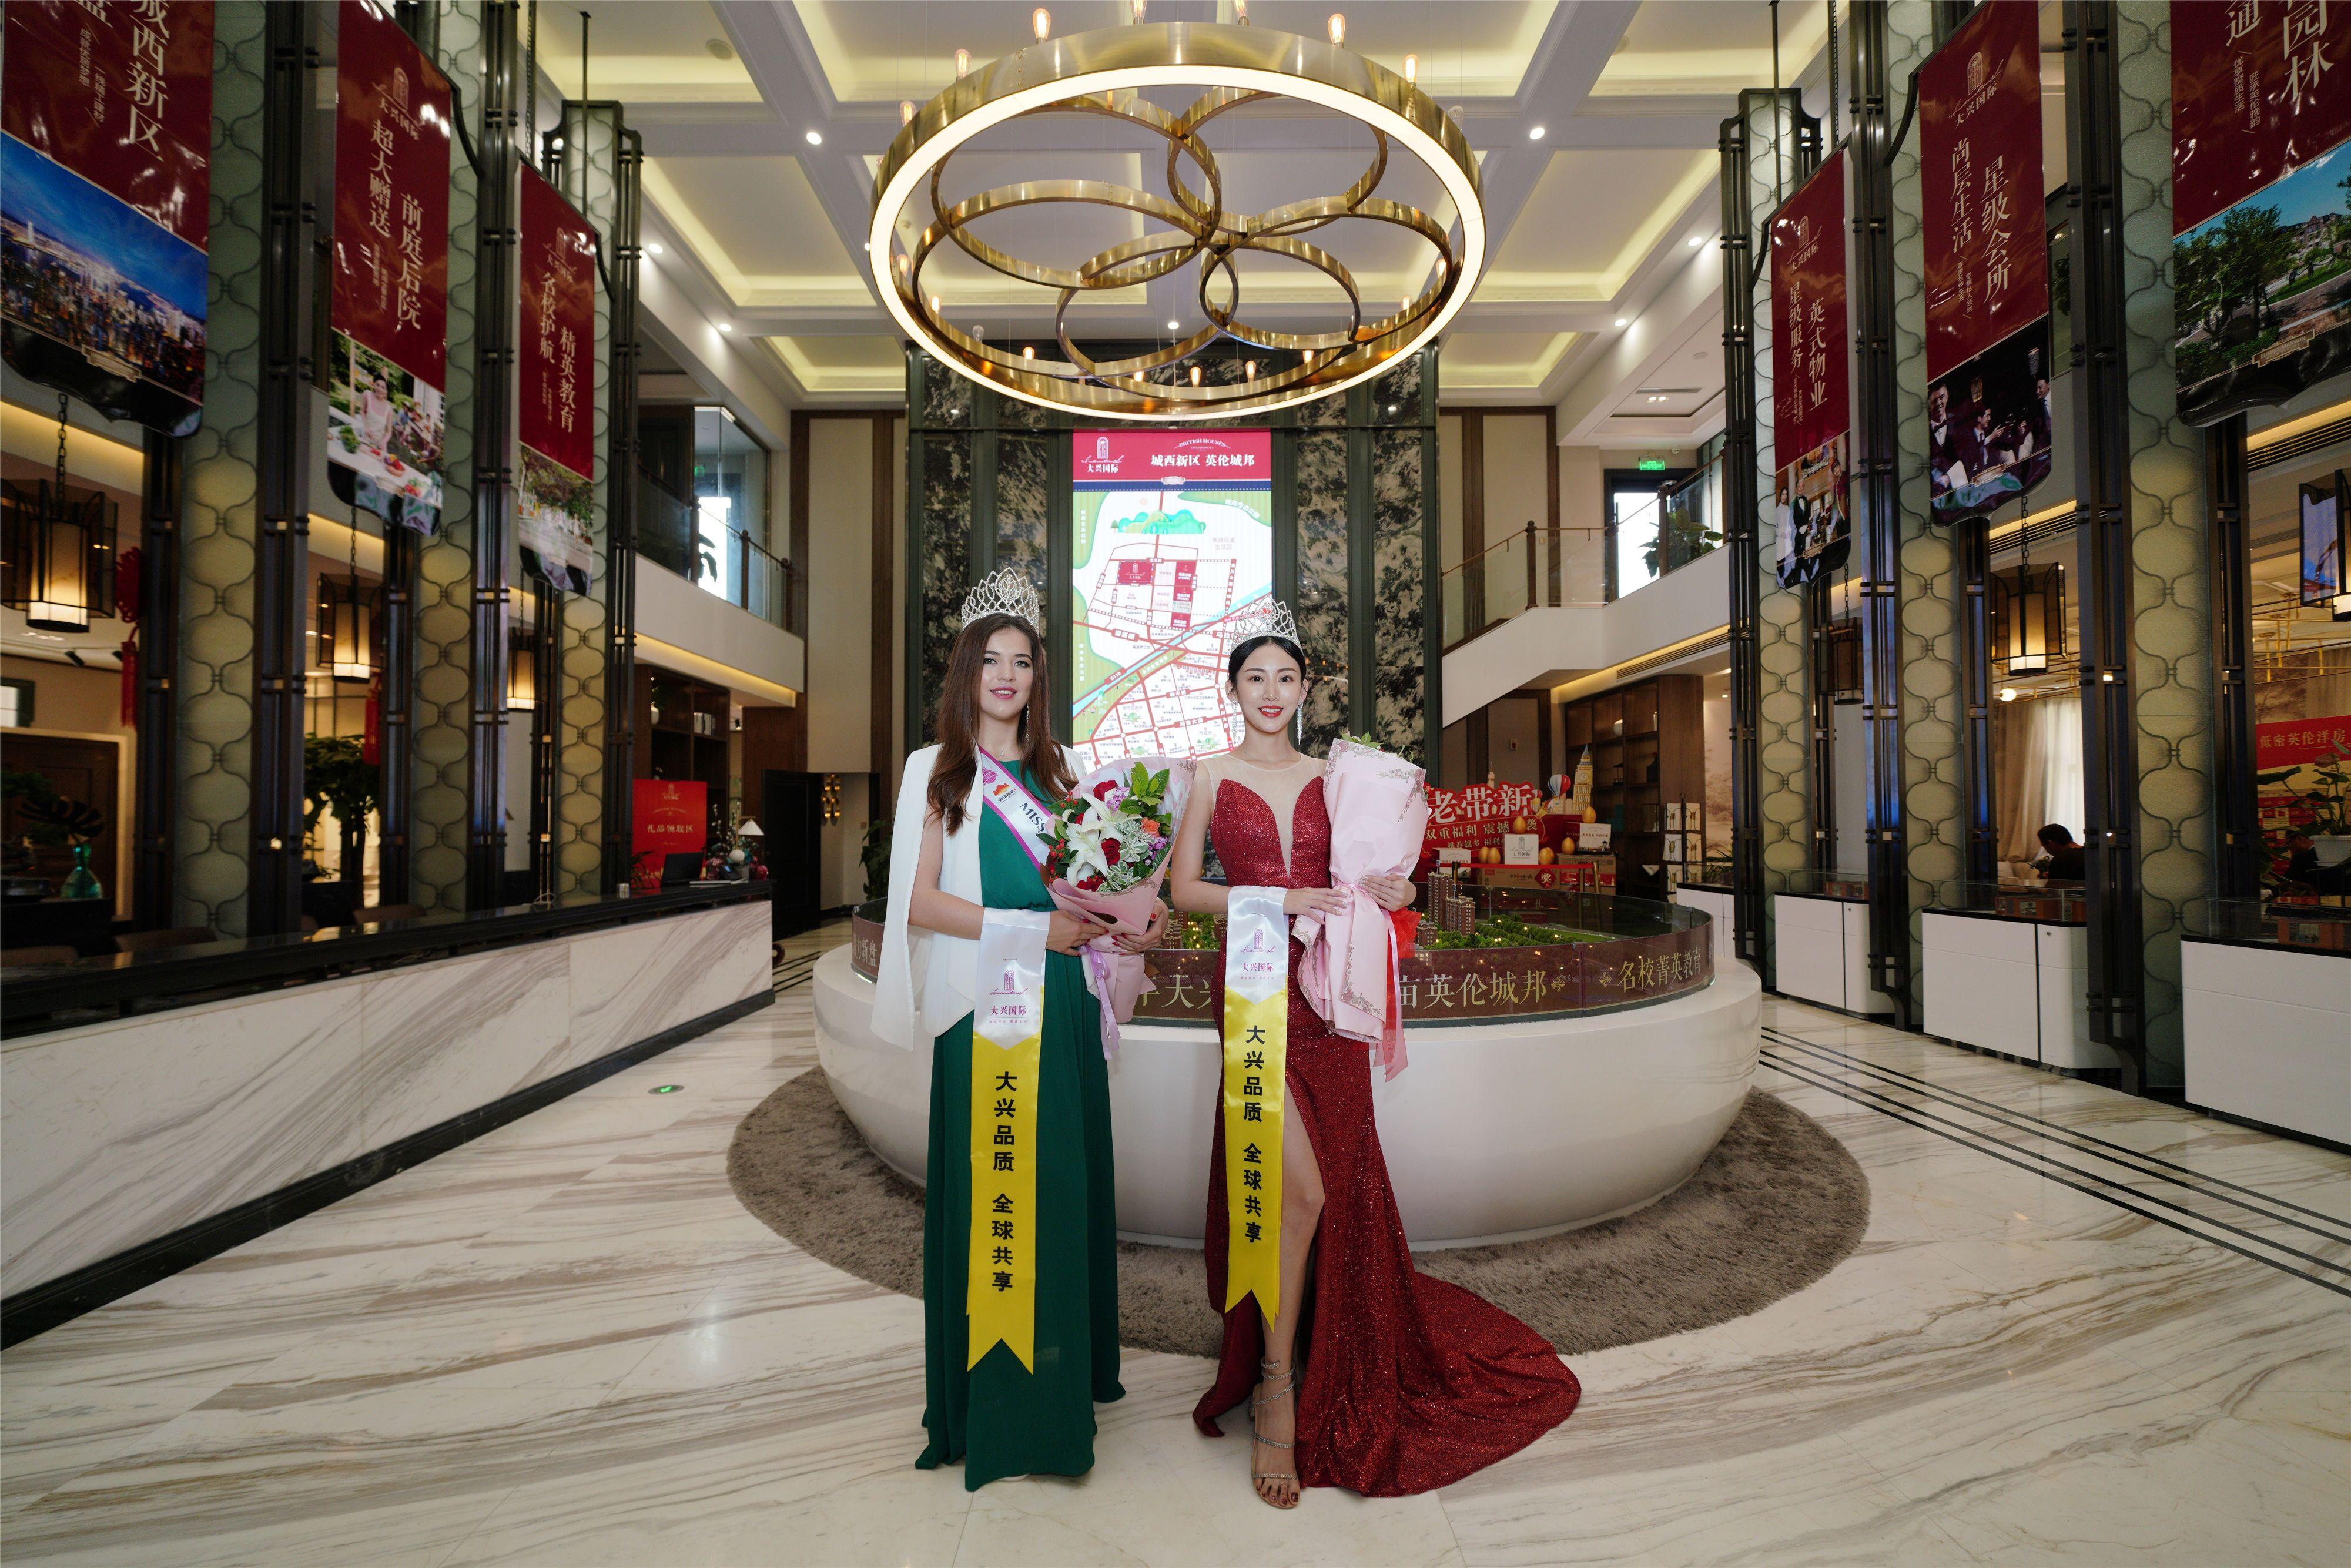 “大兴国际杯”2019世界旅游小姐中国总决赛启动